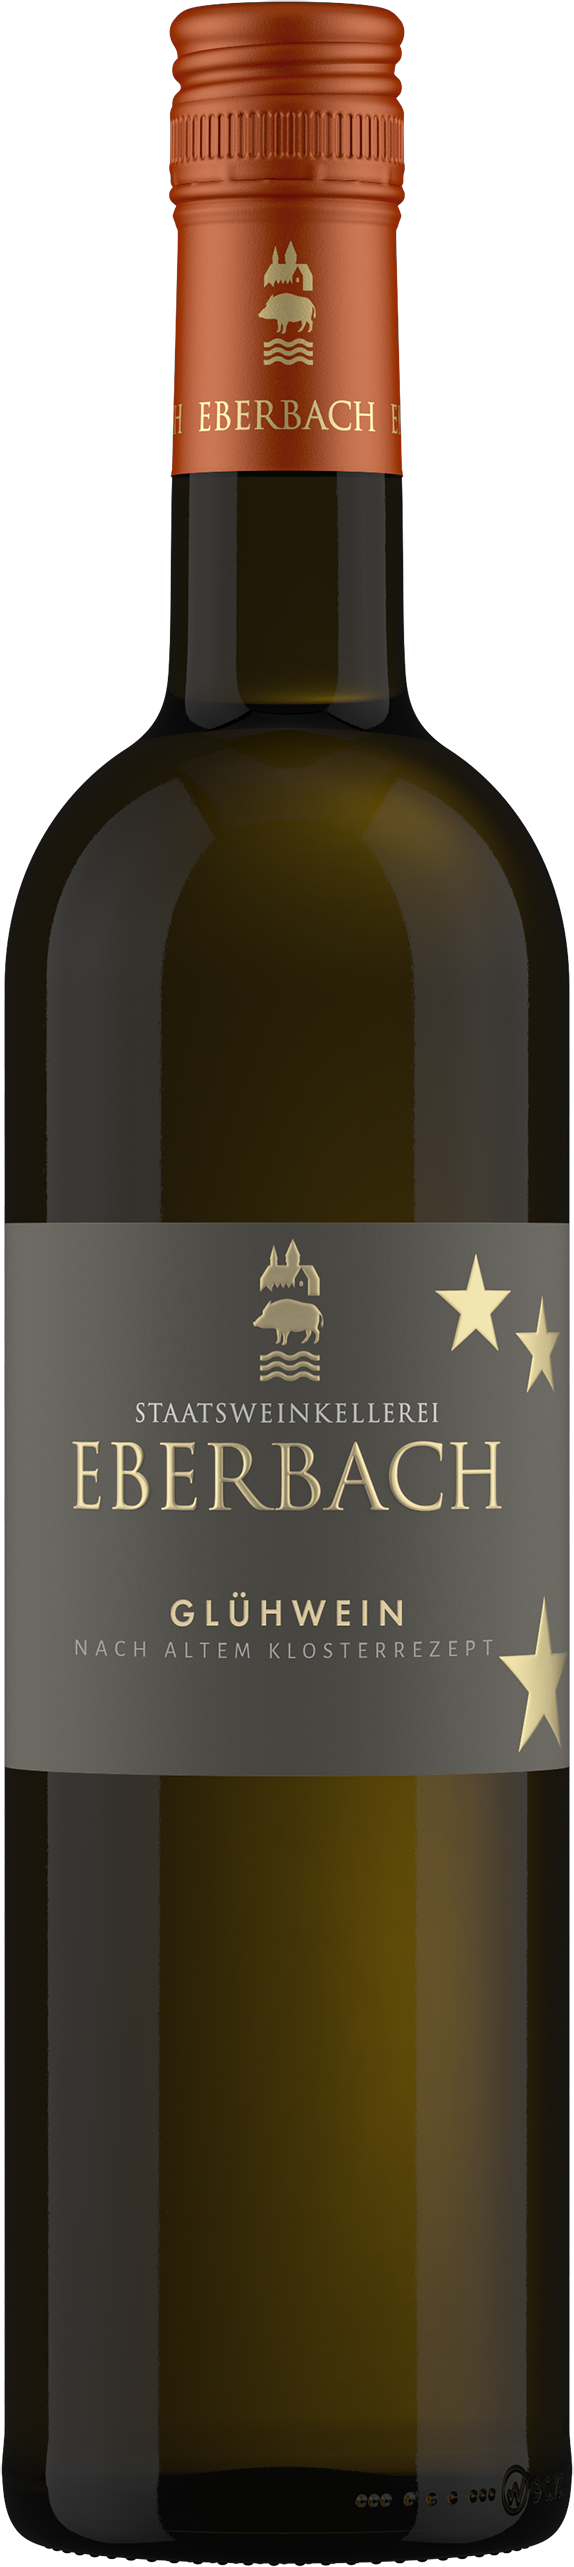 Wein online kaufen Eberbach & bestellen Kloster